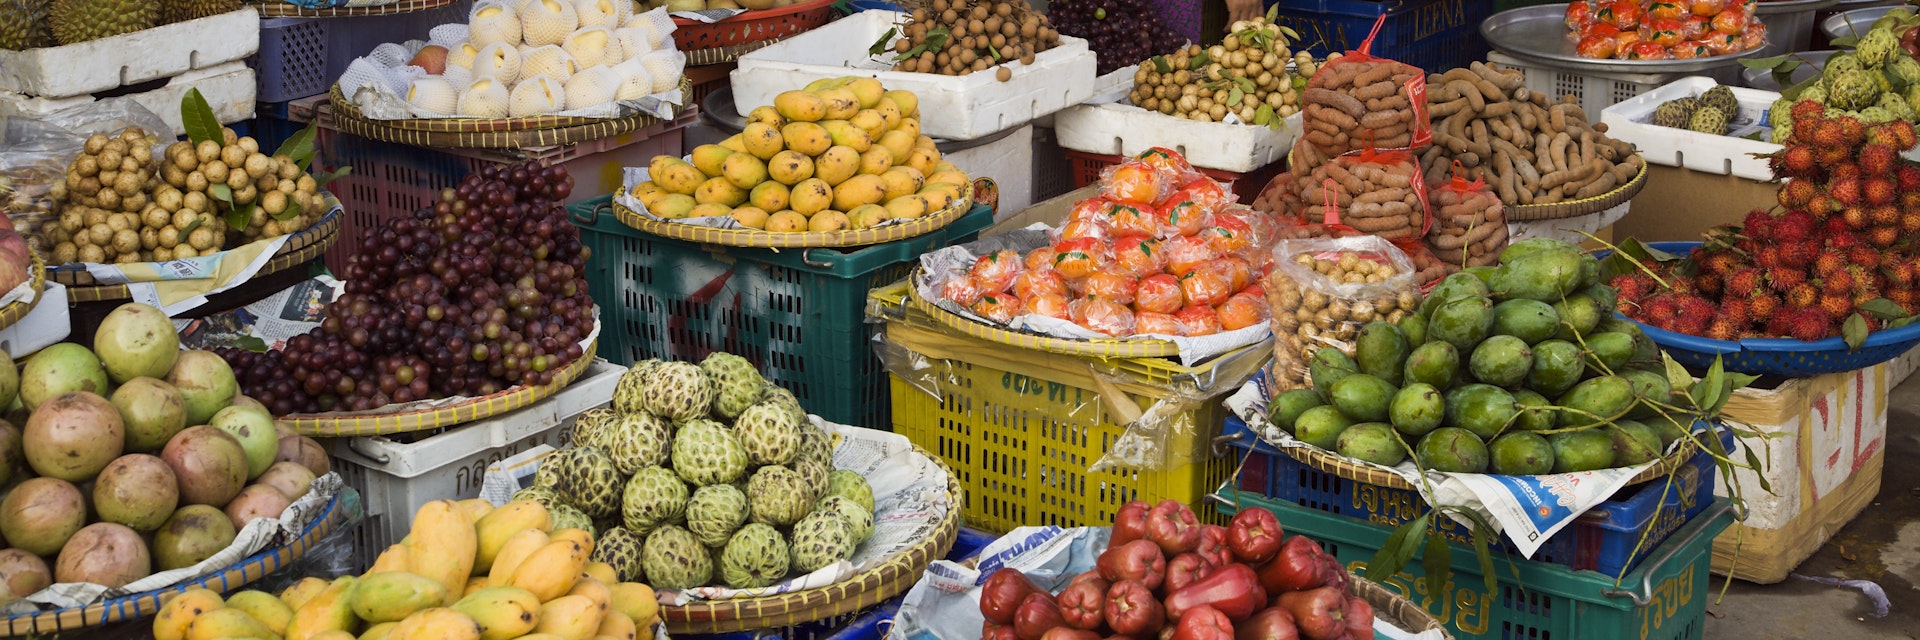 Fruit stall full of tropical fruit in market.